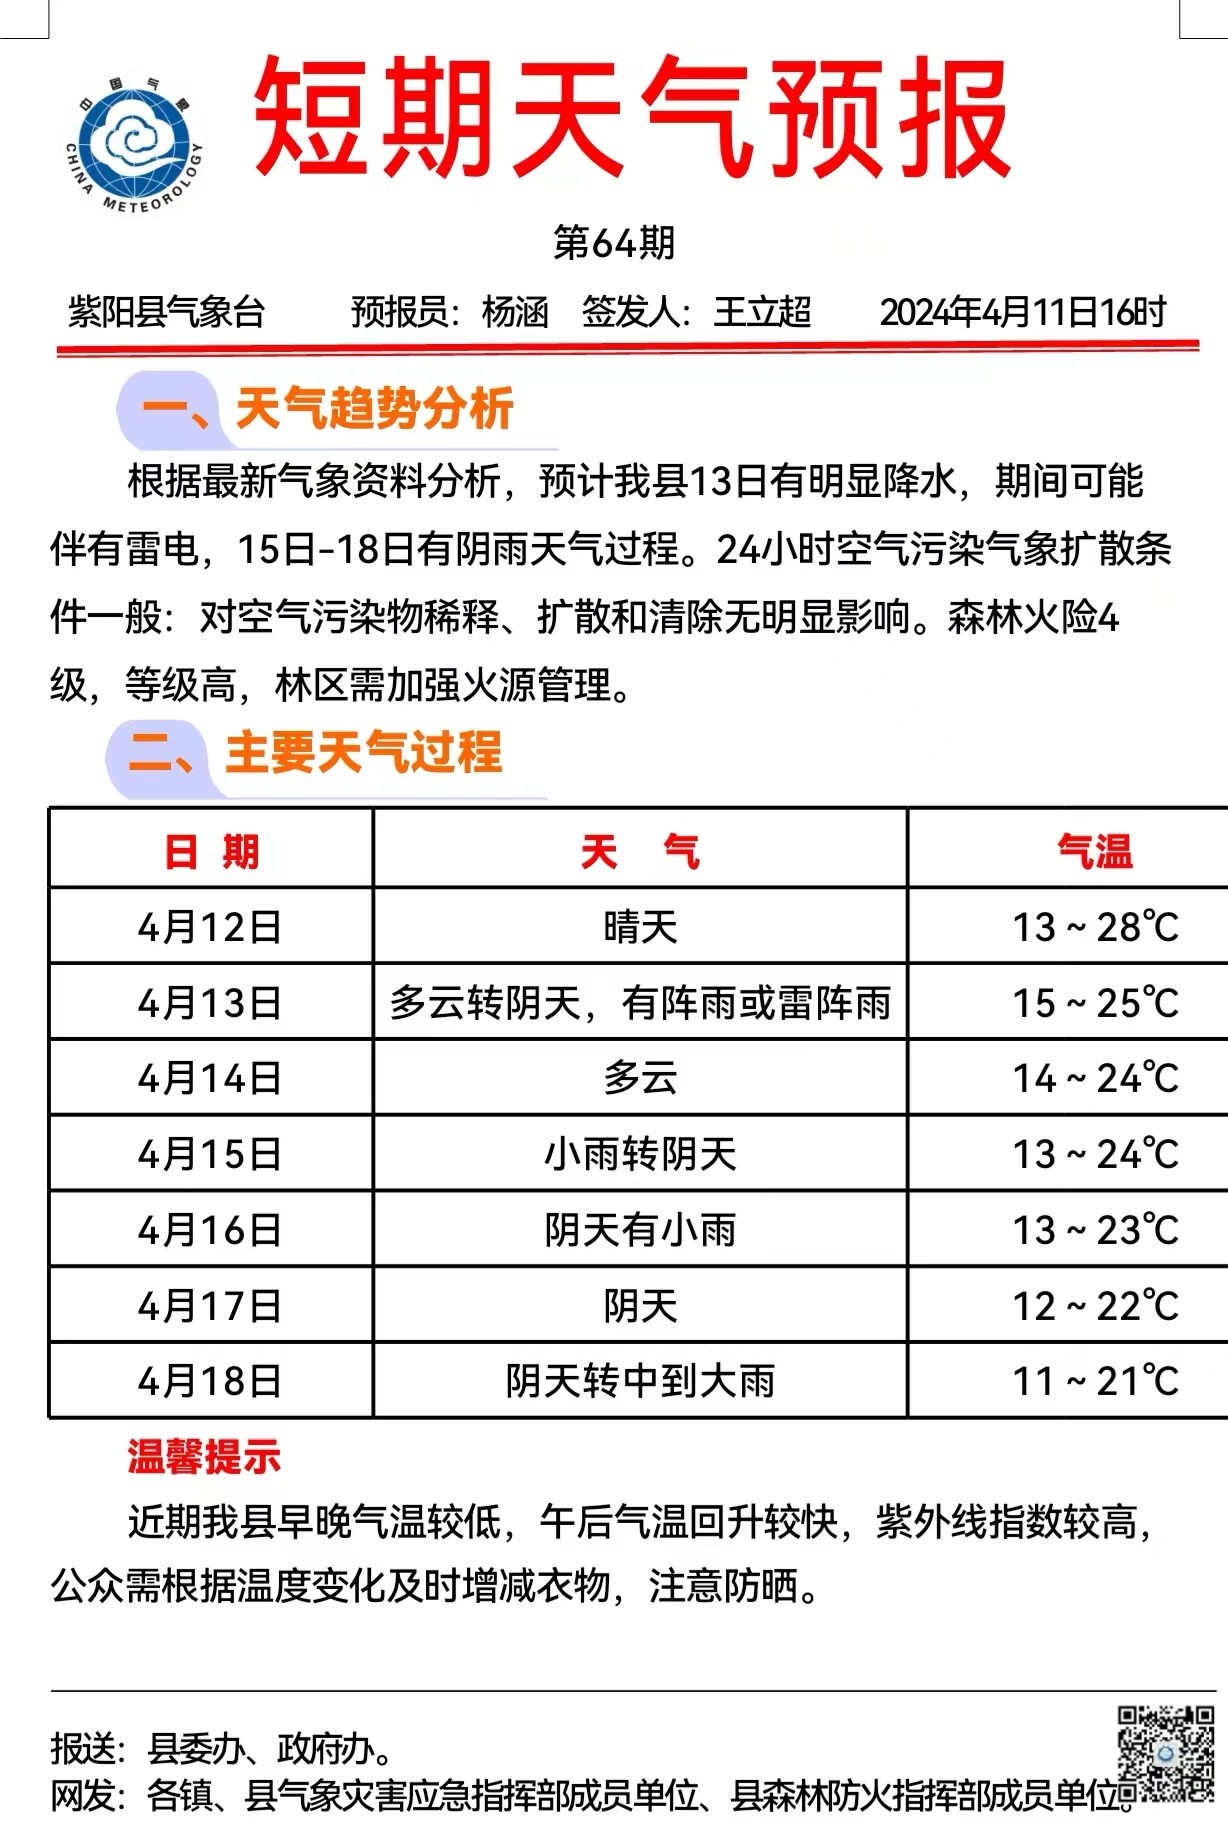 紫阳县短期天气预报